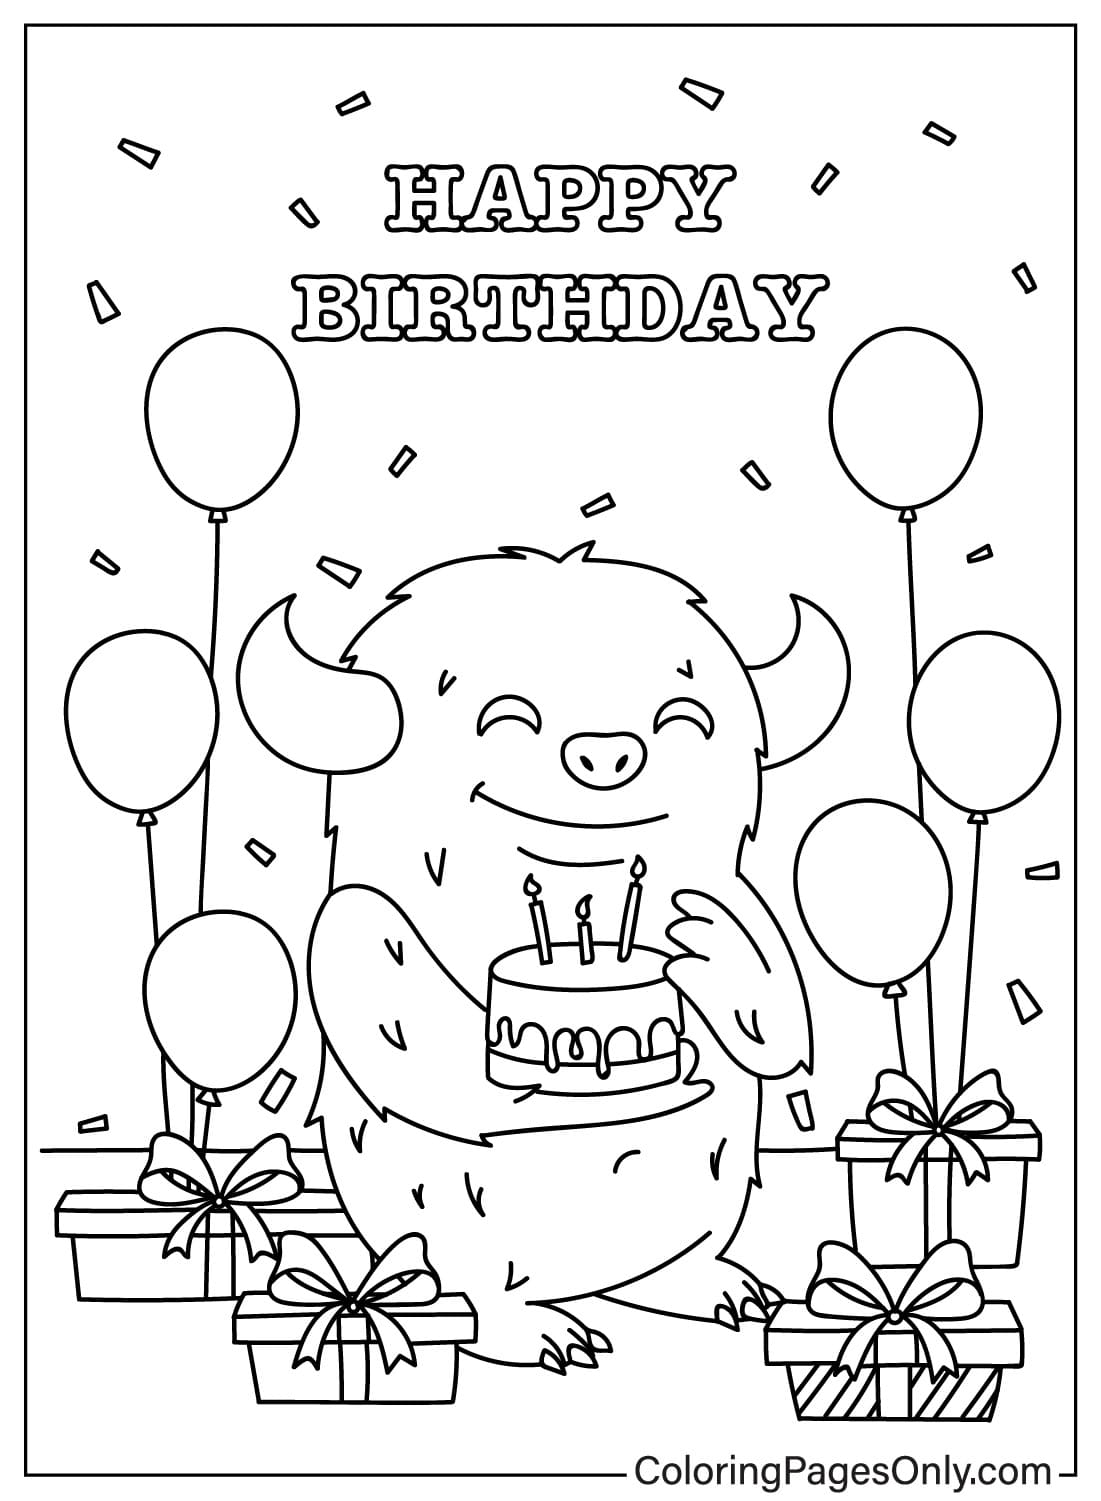 Раскраска с днем ​​рождения для детей из открытки с днем ​​рождения